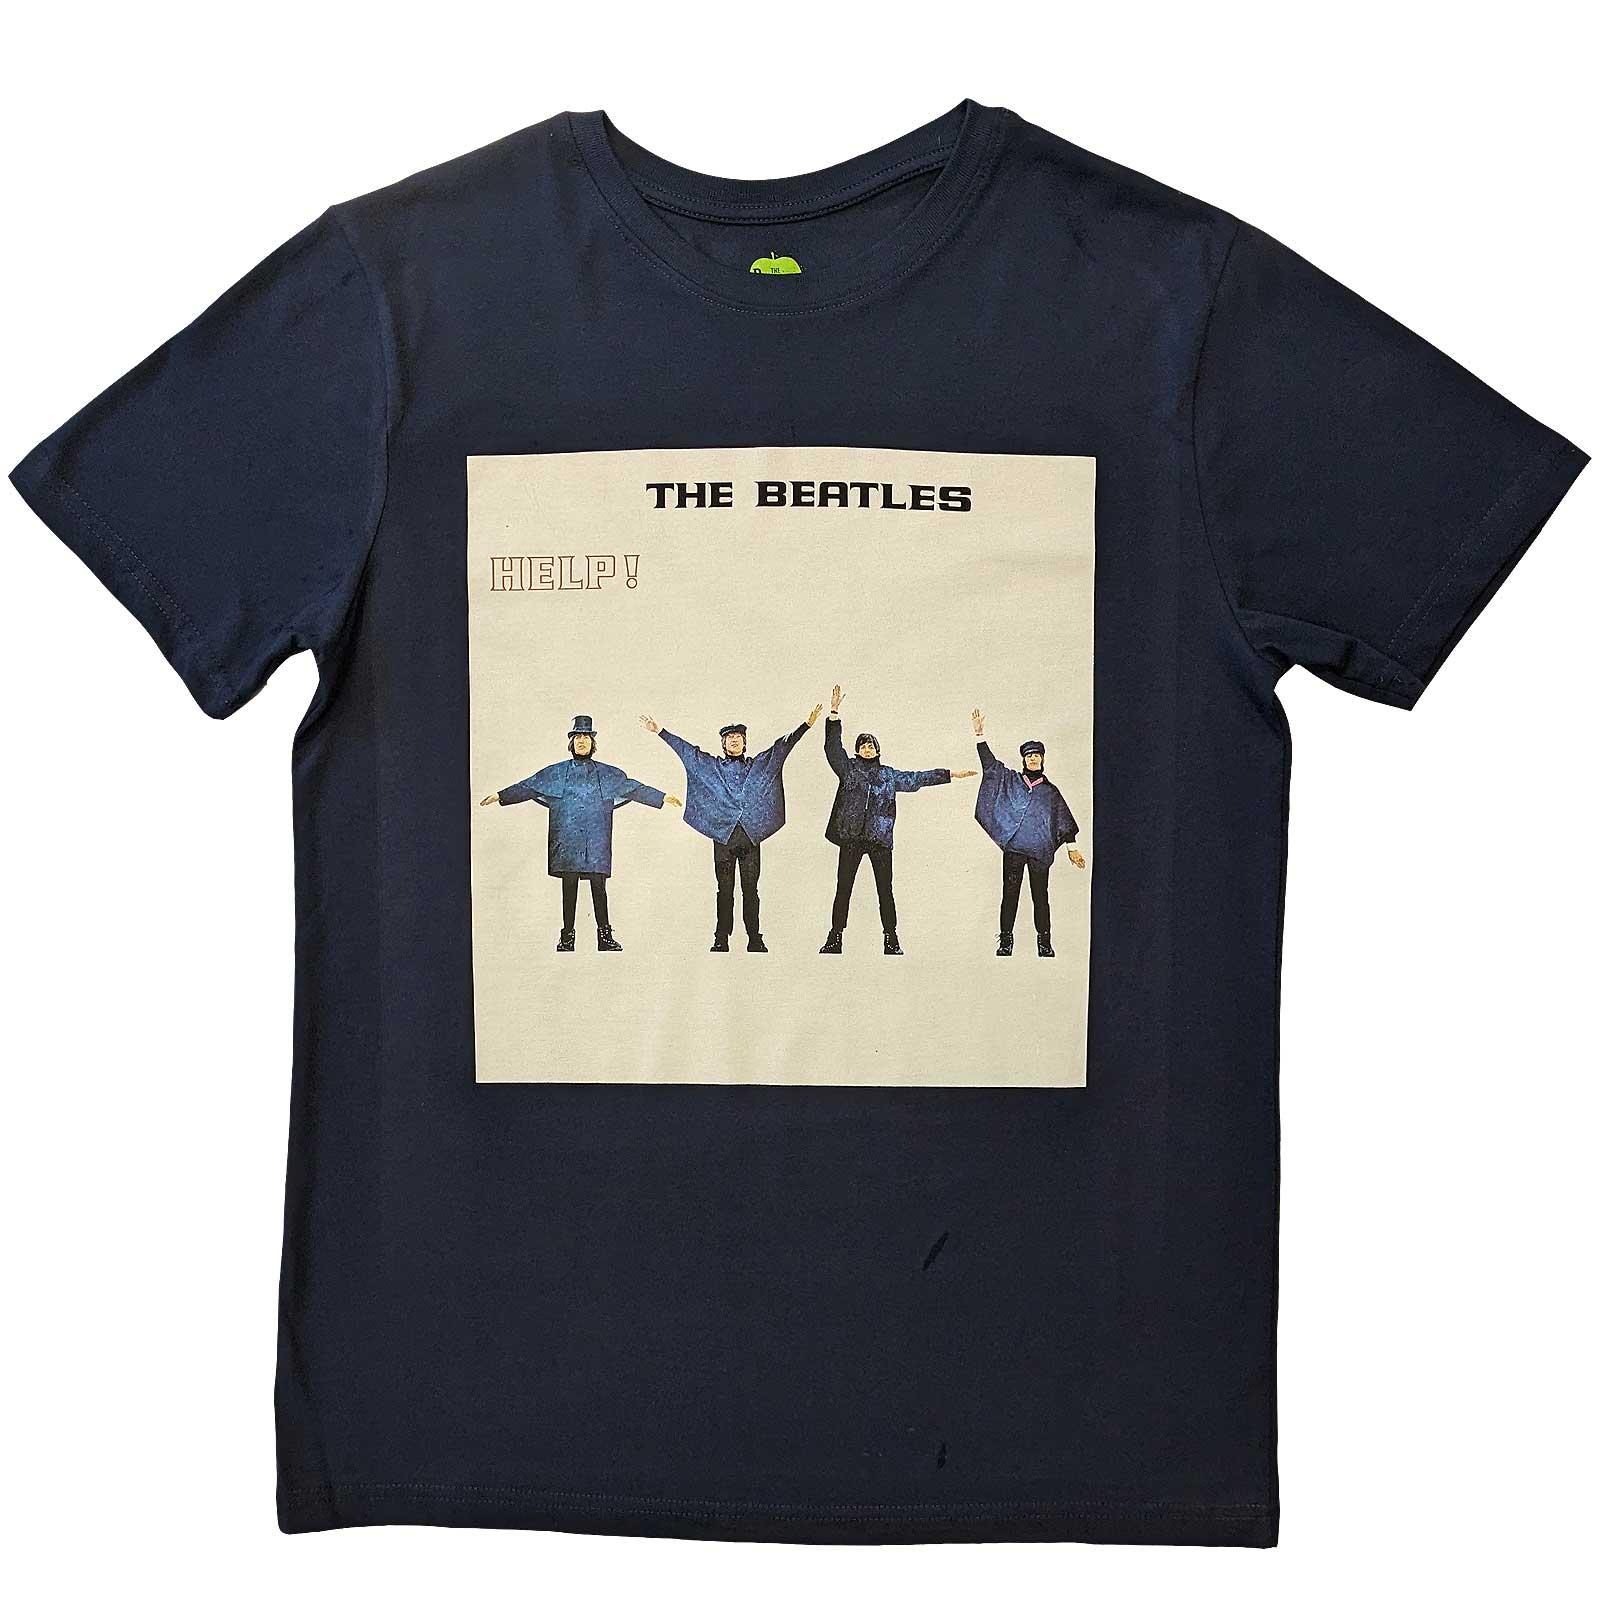 (ビートルズ) The Beatles オフィシャル商品 ユニセックス Help アルバム Tシャツ 半袖 トップス 【海外通販】